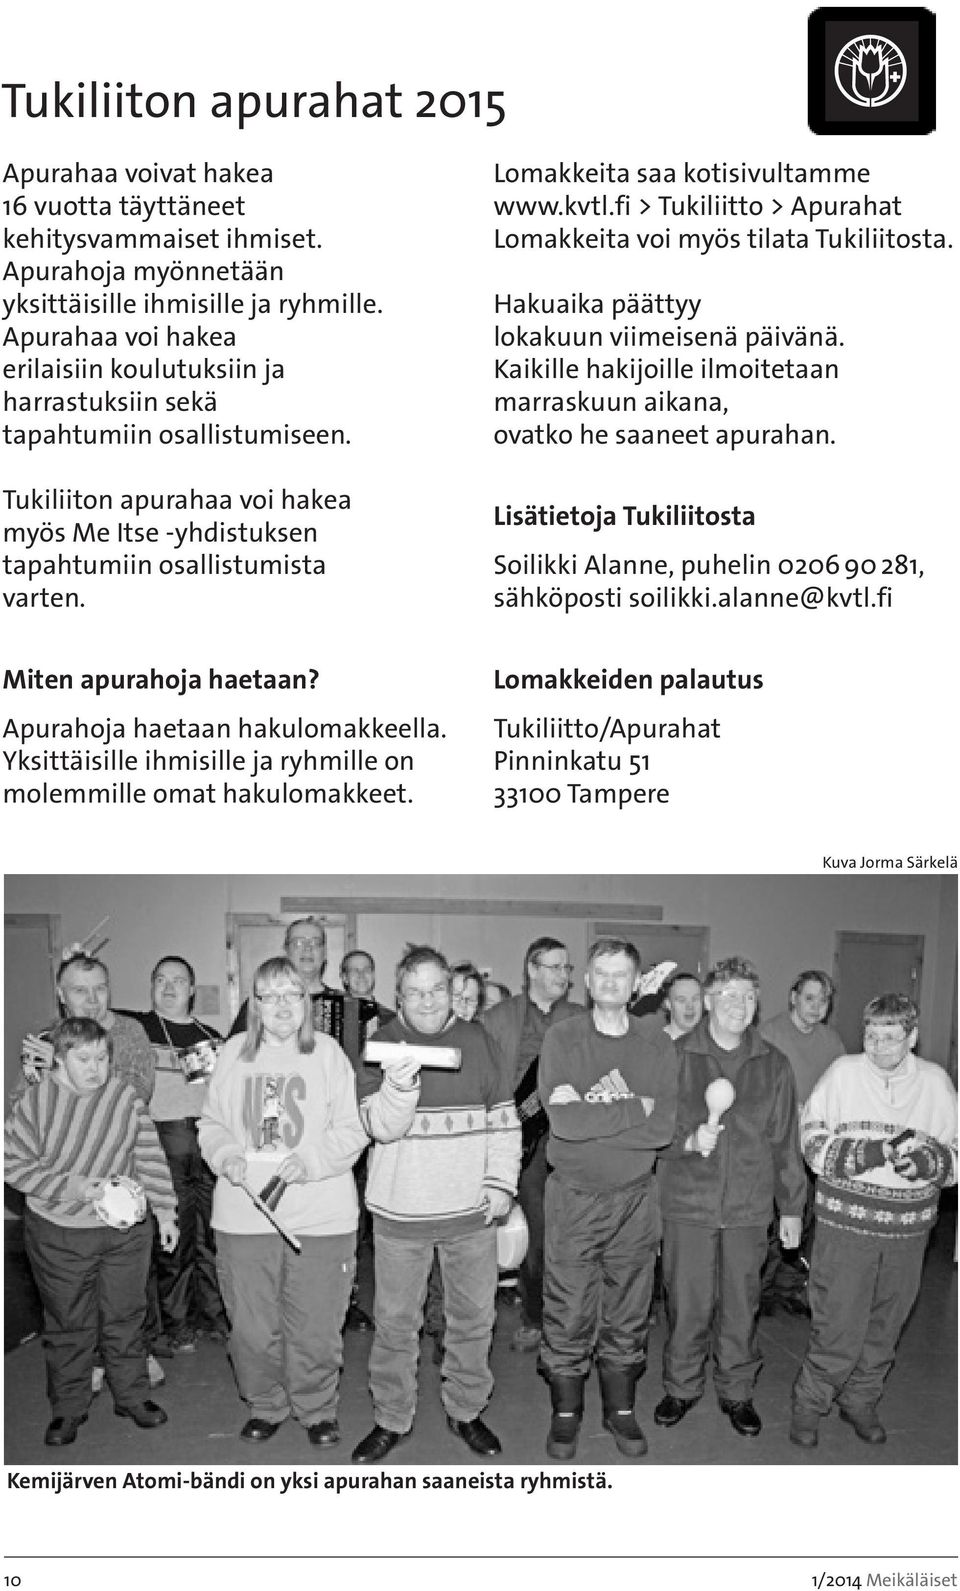 Lomakkeita saa kotisivultamme www.kvtl.fi > Tukiliitto > Apurahat Lomakkeita voi myös tilata Tukiliitosta. Hakuaika päättyy lokakuun viimeisenä päivänä.